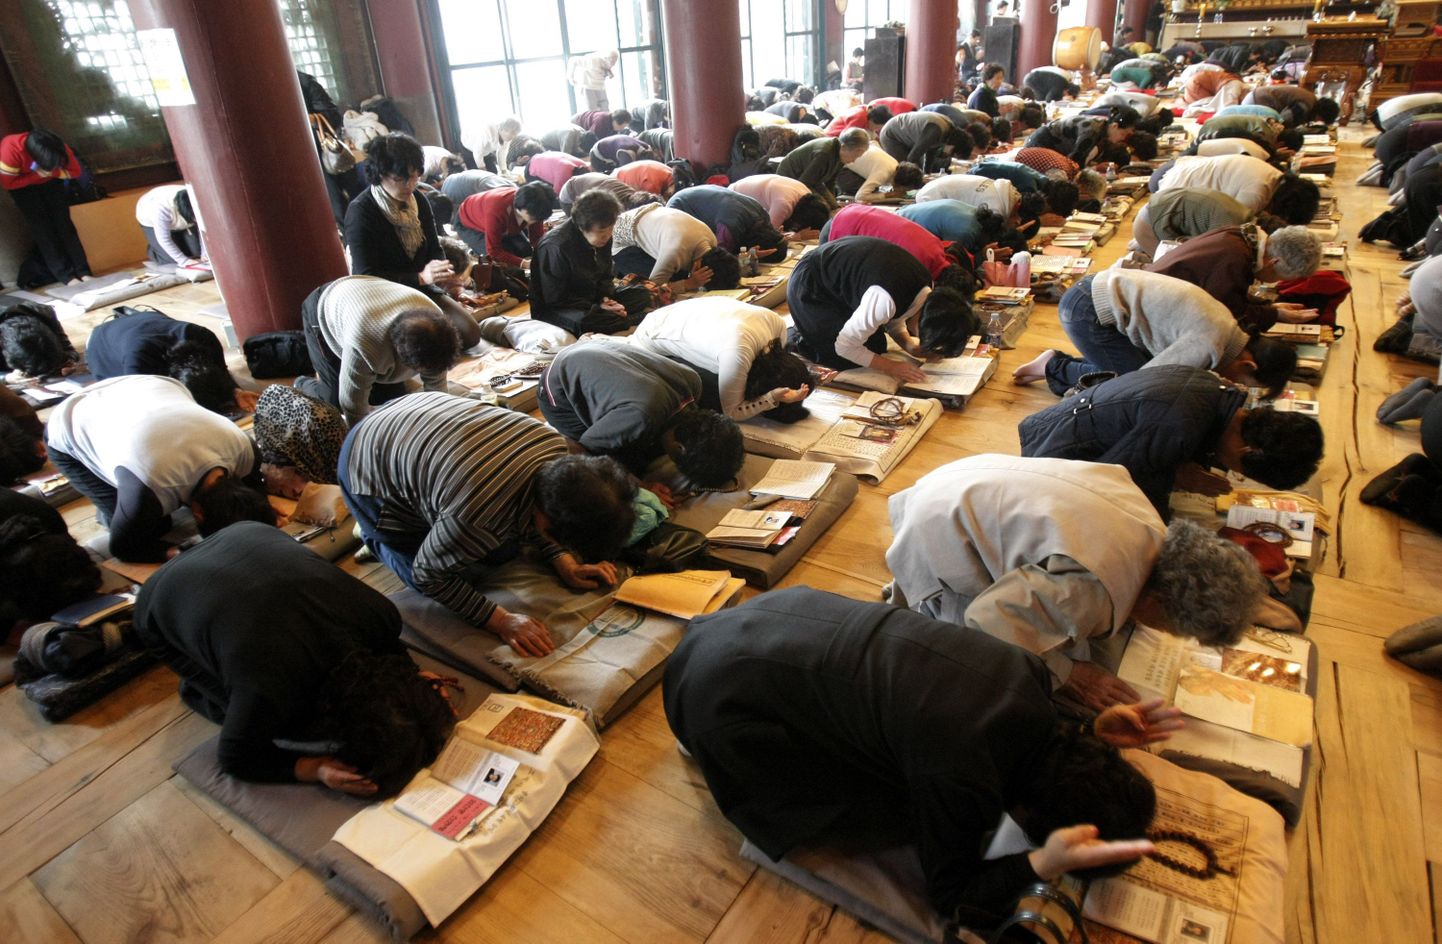 Lõuna-Korea vanemad laste eest palvetamas